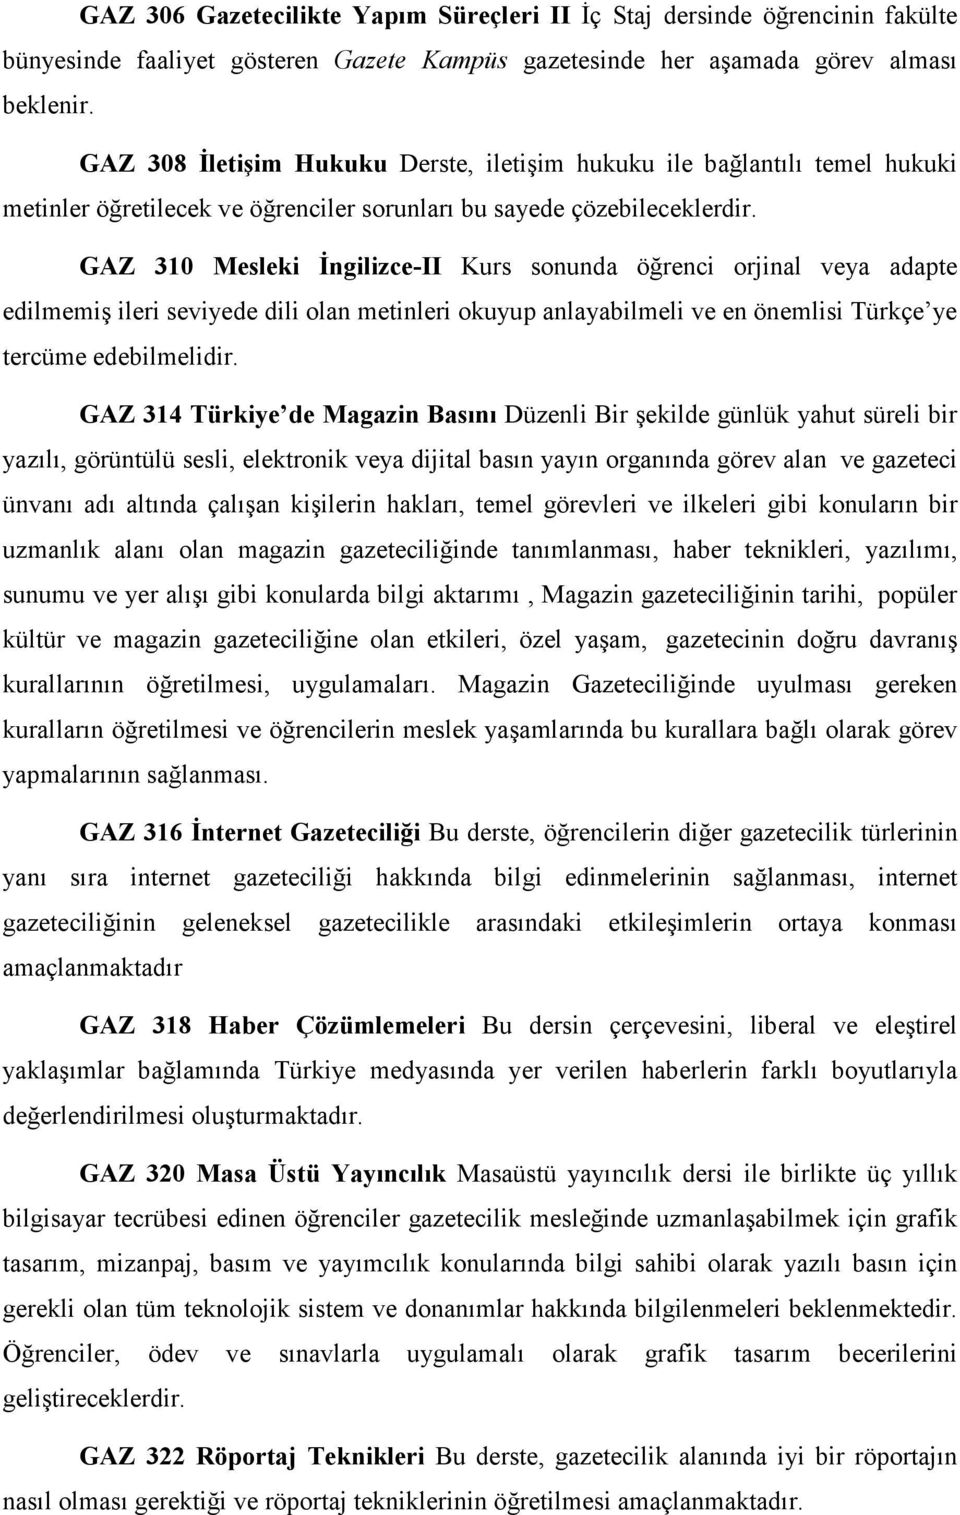 GAZ 310 Mesleki Đngilizce-II Kurs sonunda öğrenci orjinal veya adapte edilmemiş ileri seviyede dili olan metinleri okuyup anlayabilmeli ve en önemlisi Türkçe ye tercüme edebilmelidir.